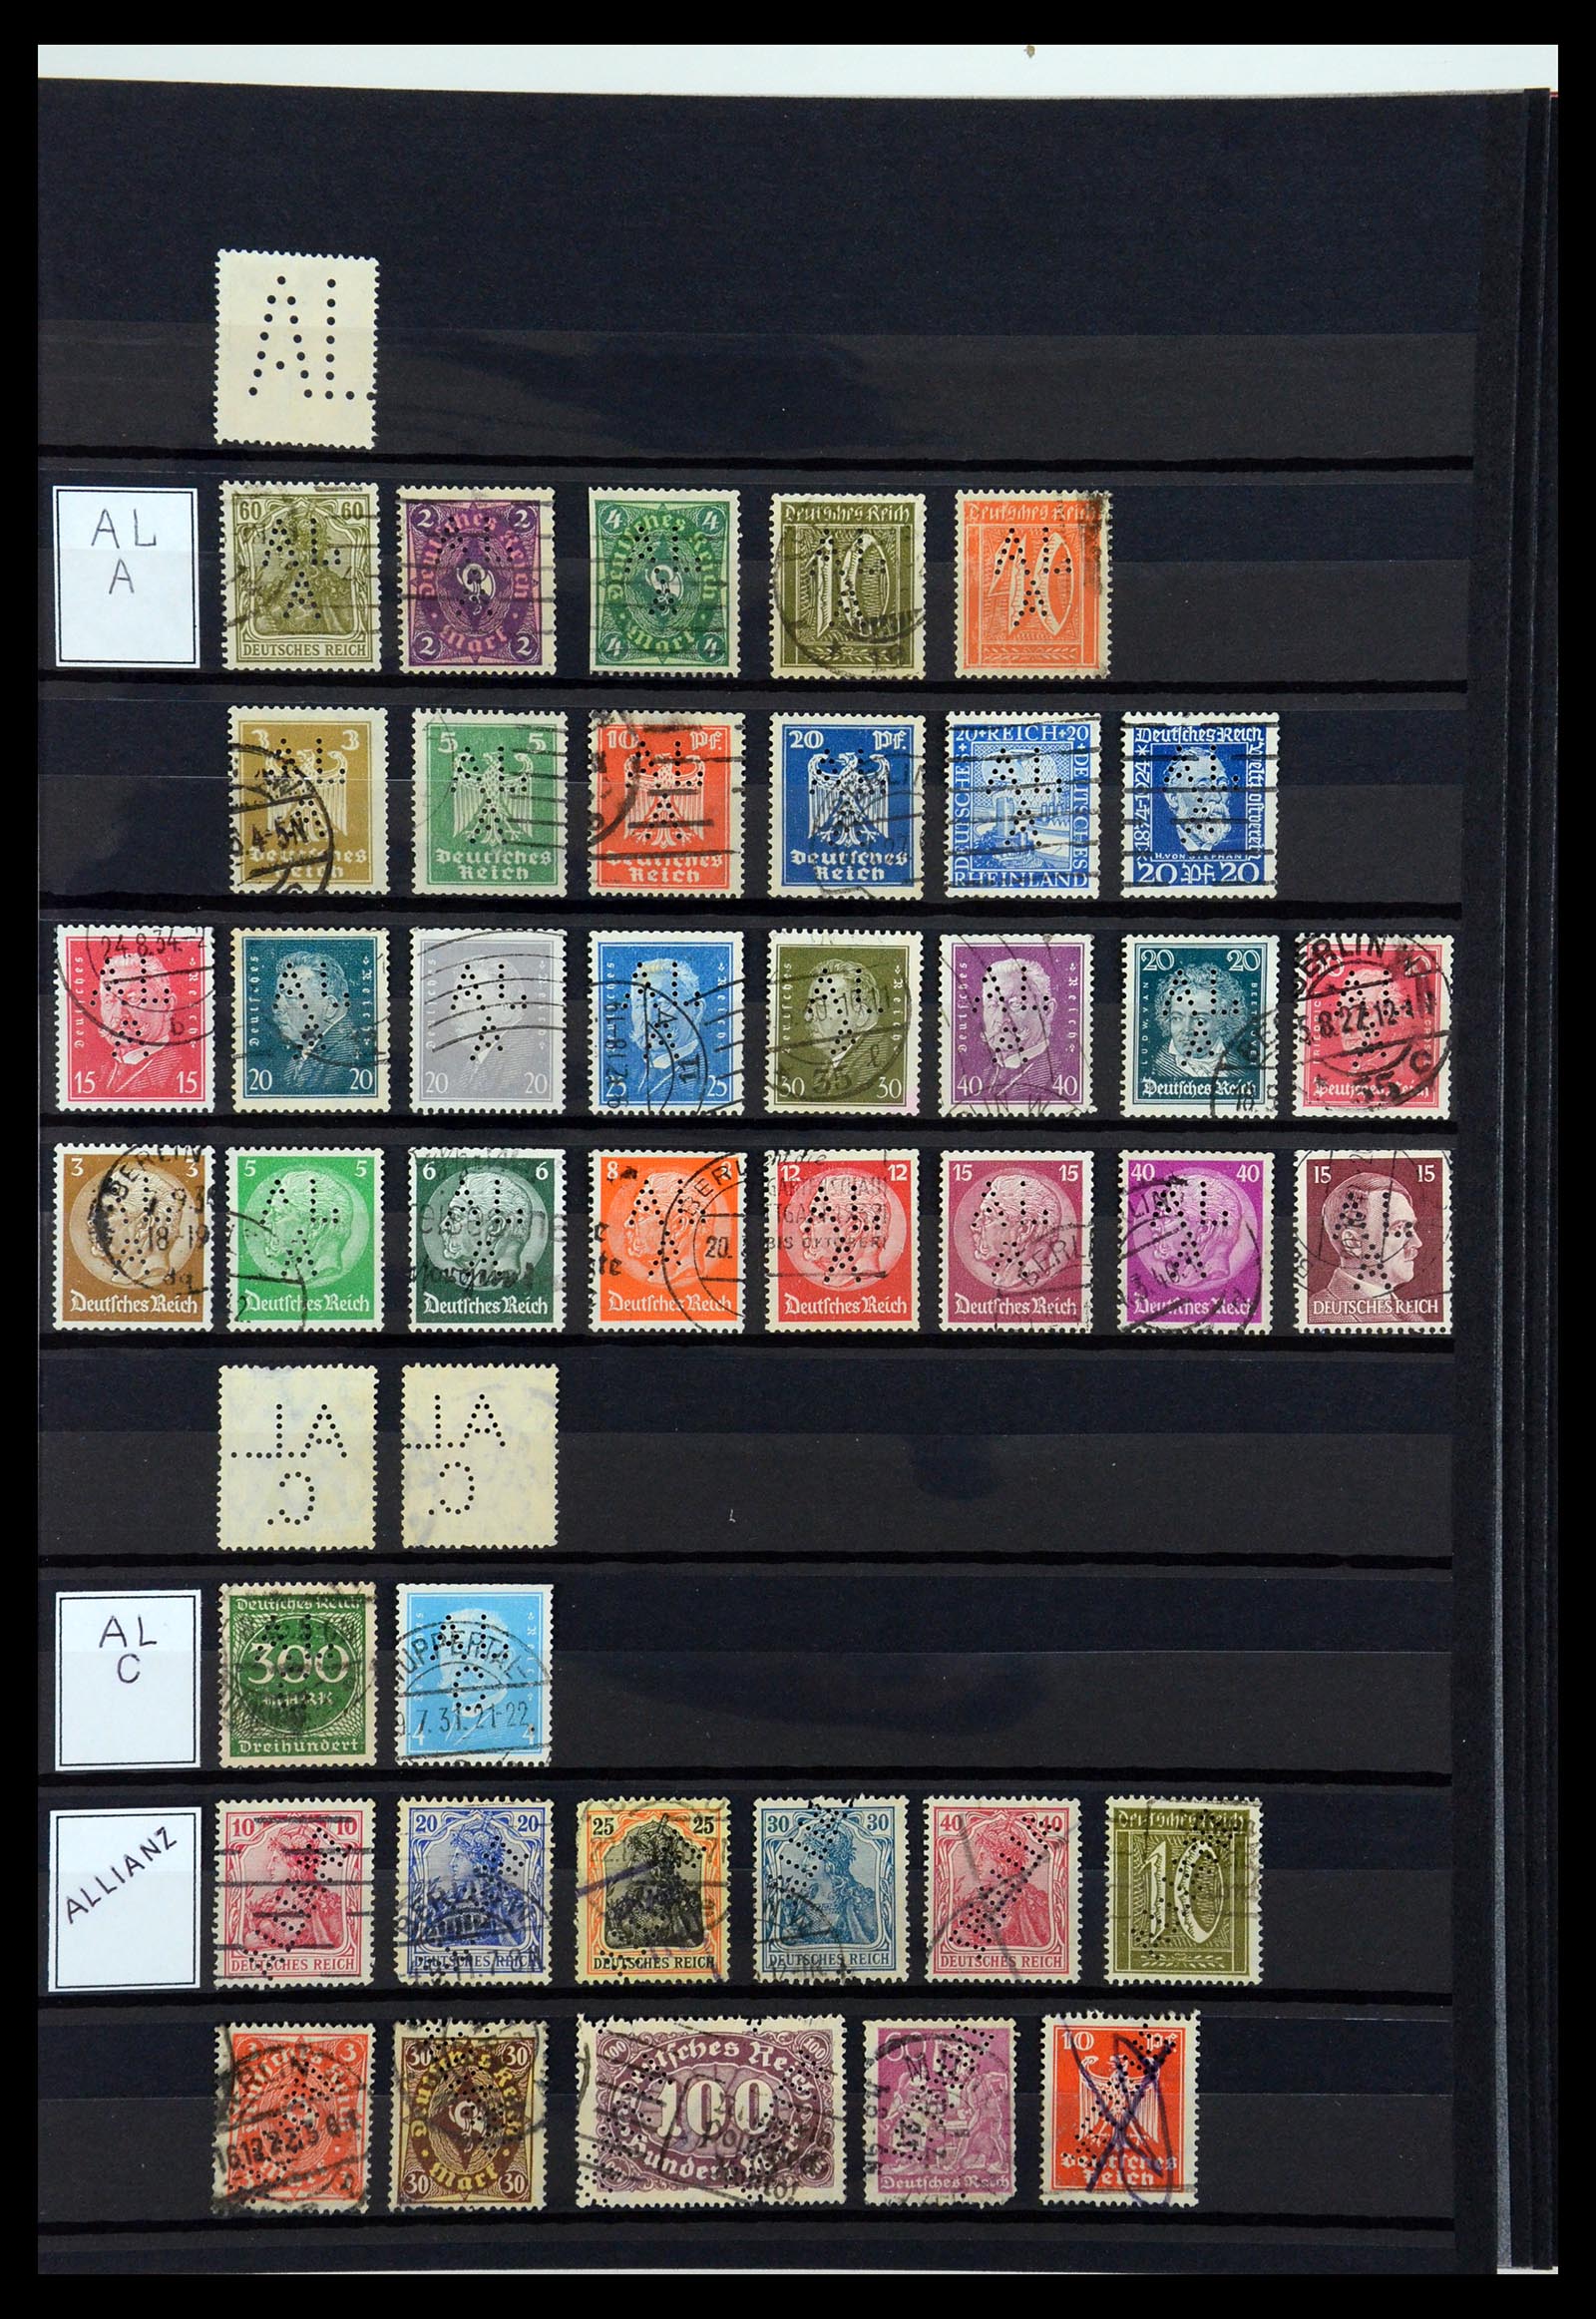 36405 019 - Stamp collection 36405 German Reich perfins 1880-1945.